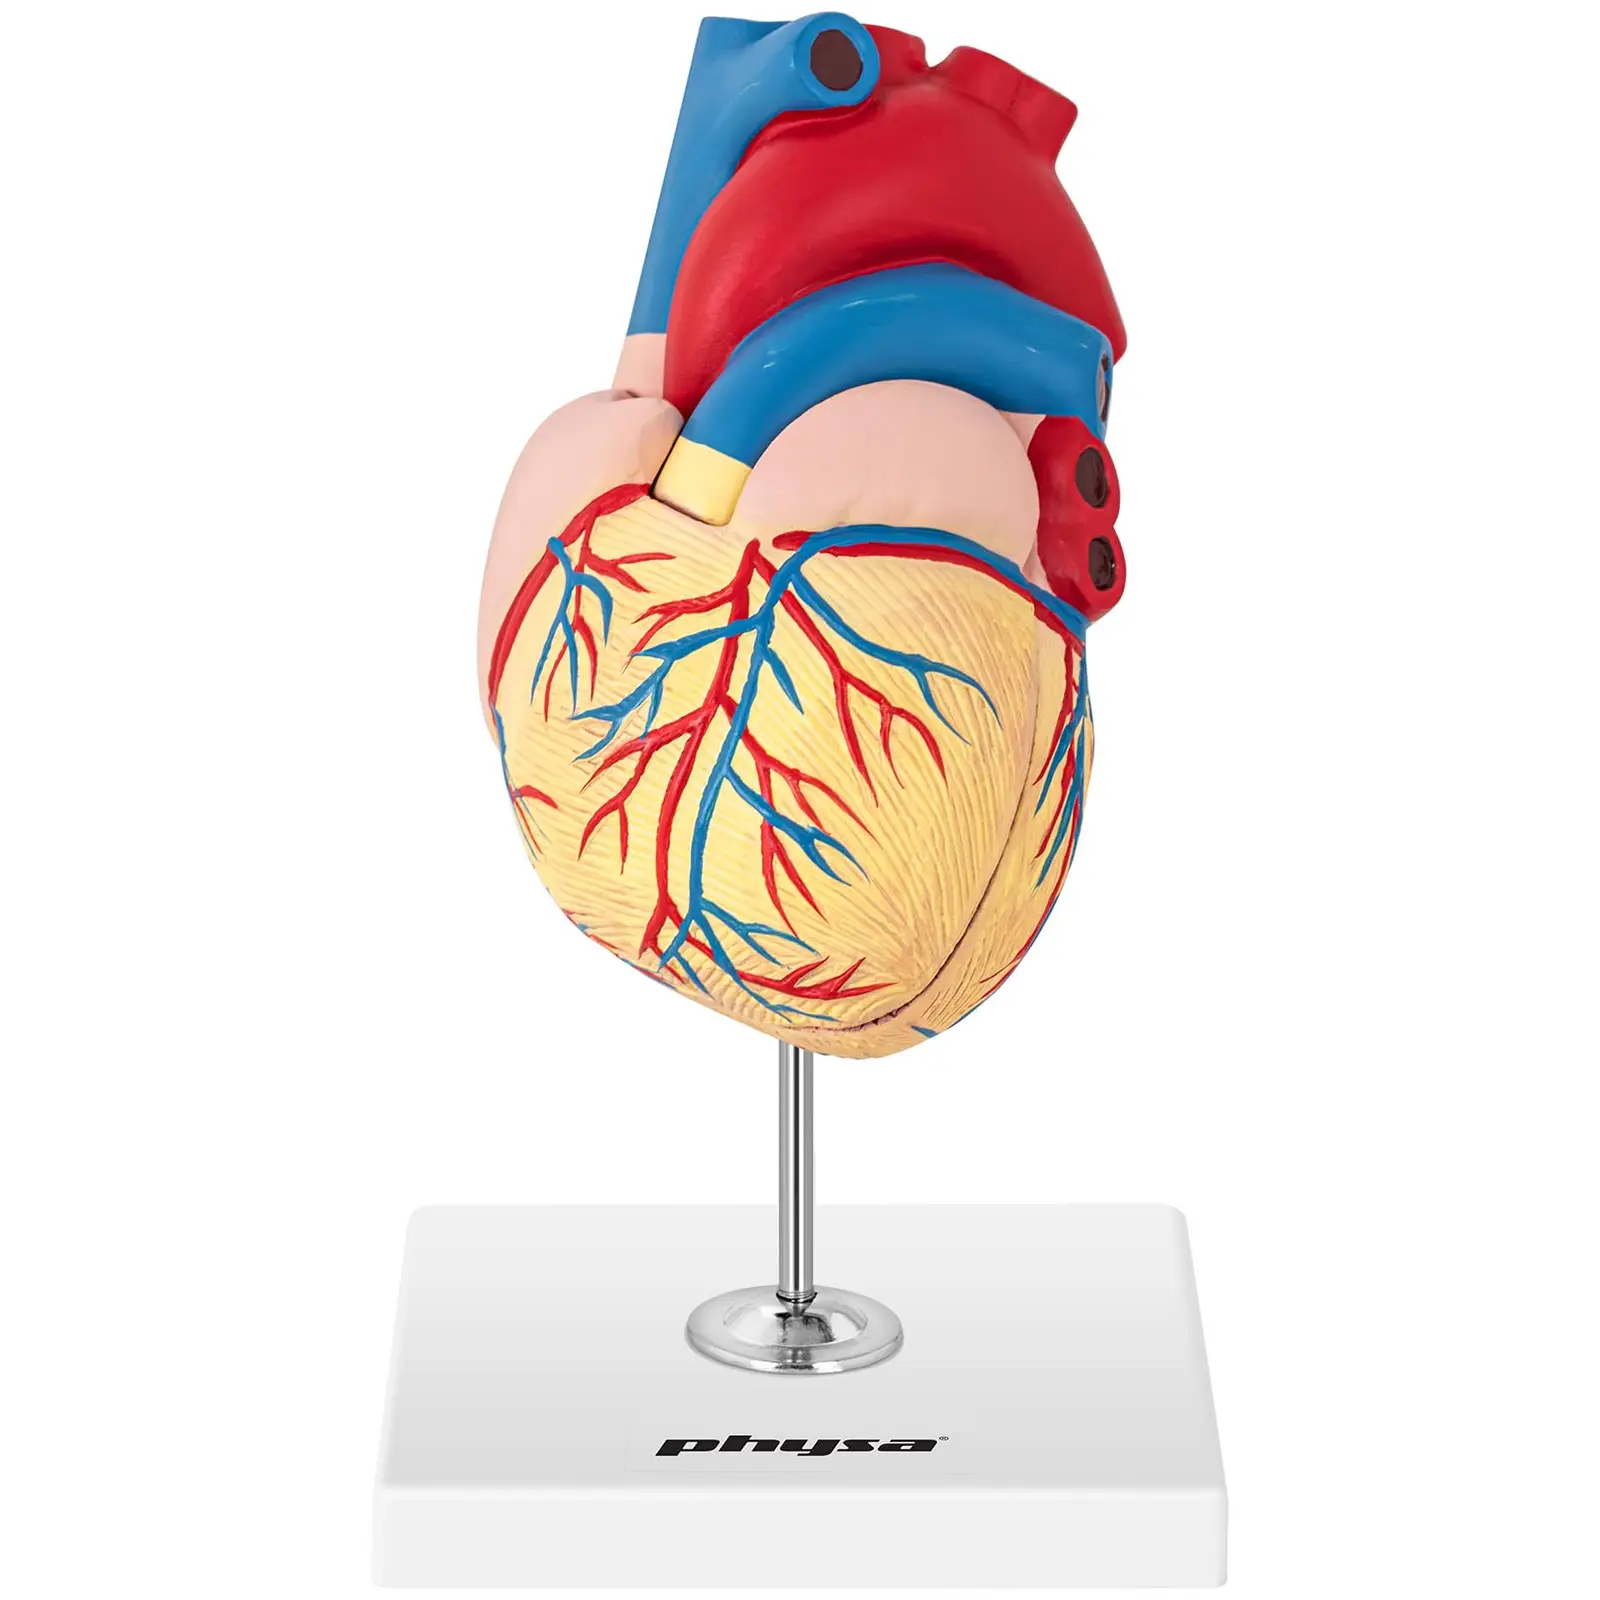 Model srca - ločljiv na 2 dela - v naravni velikosti